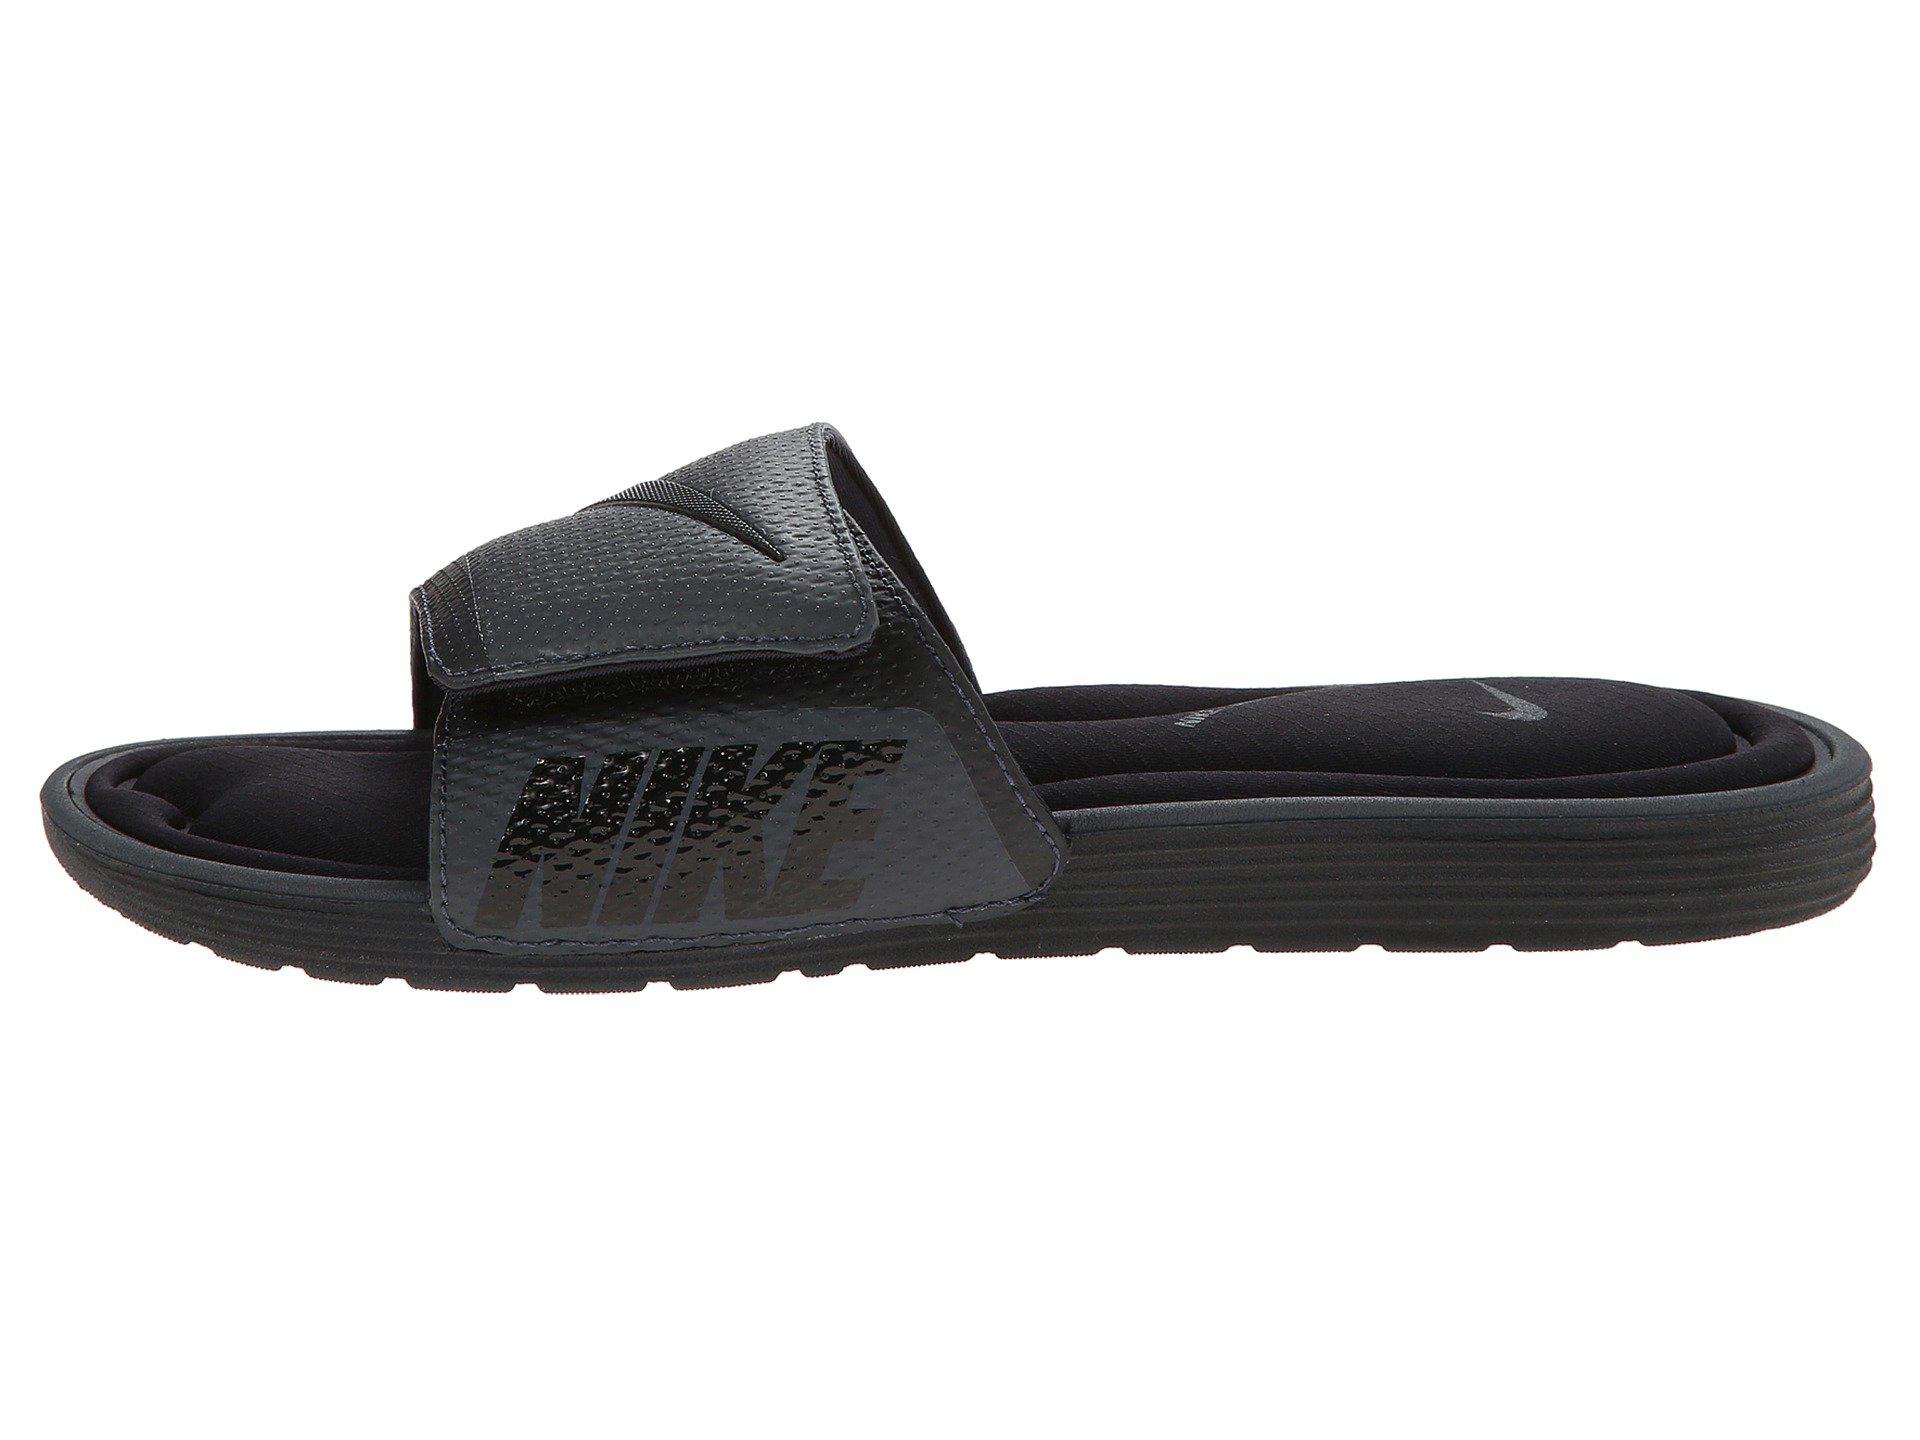 Nike Solarsoft Comfort Slide Sandal in Black/Anthracite (Black) for Men -  Lyst